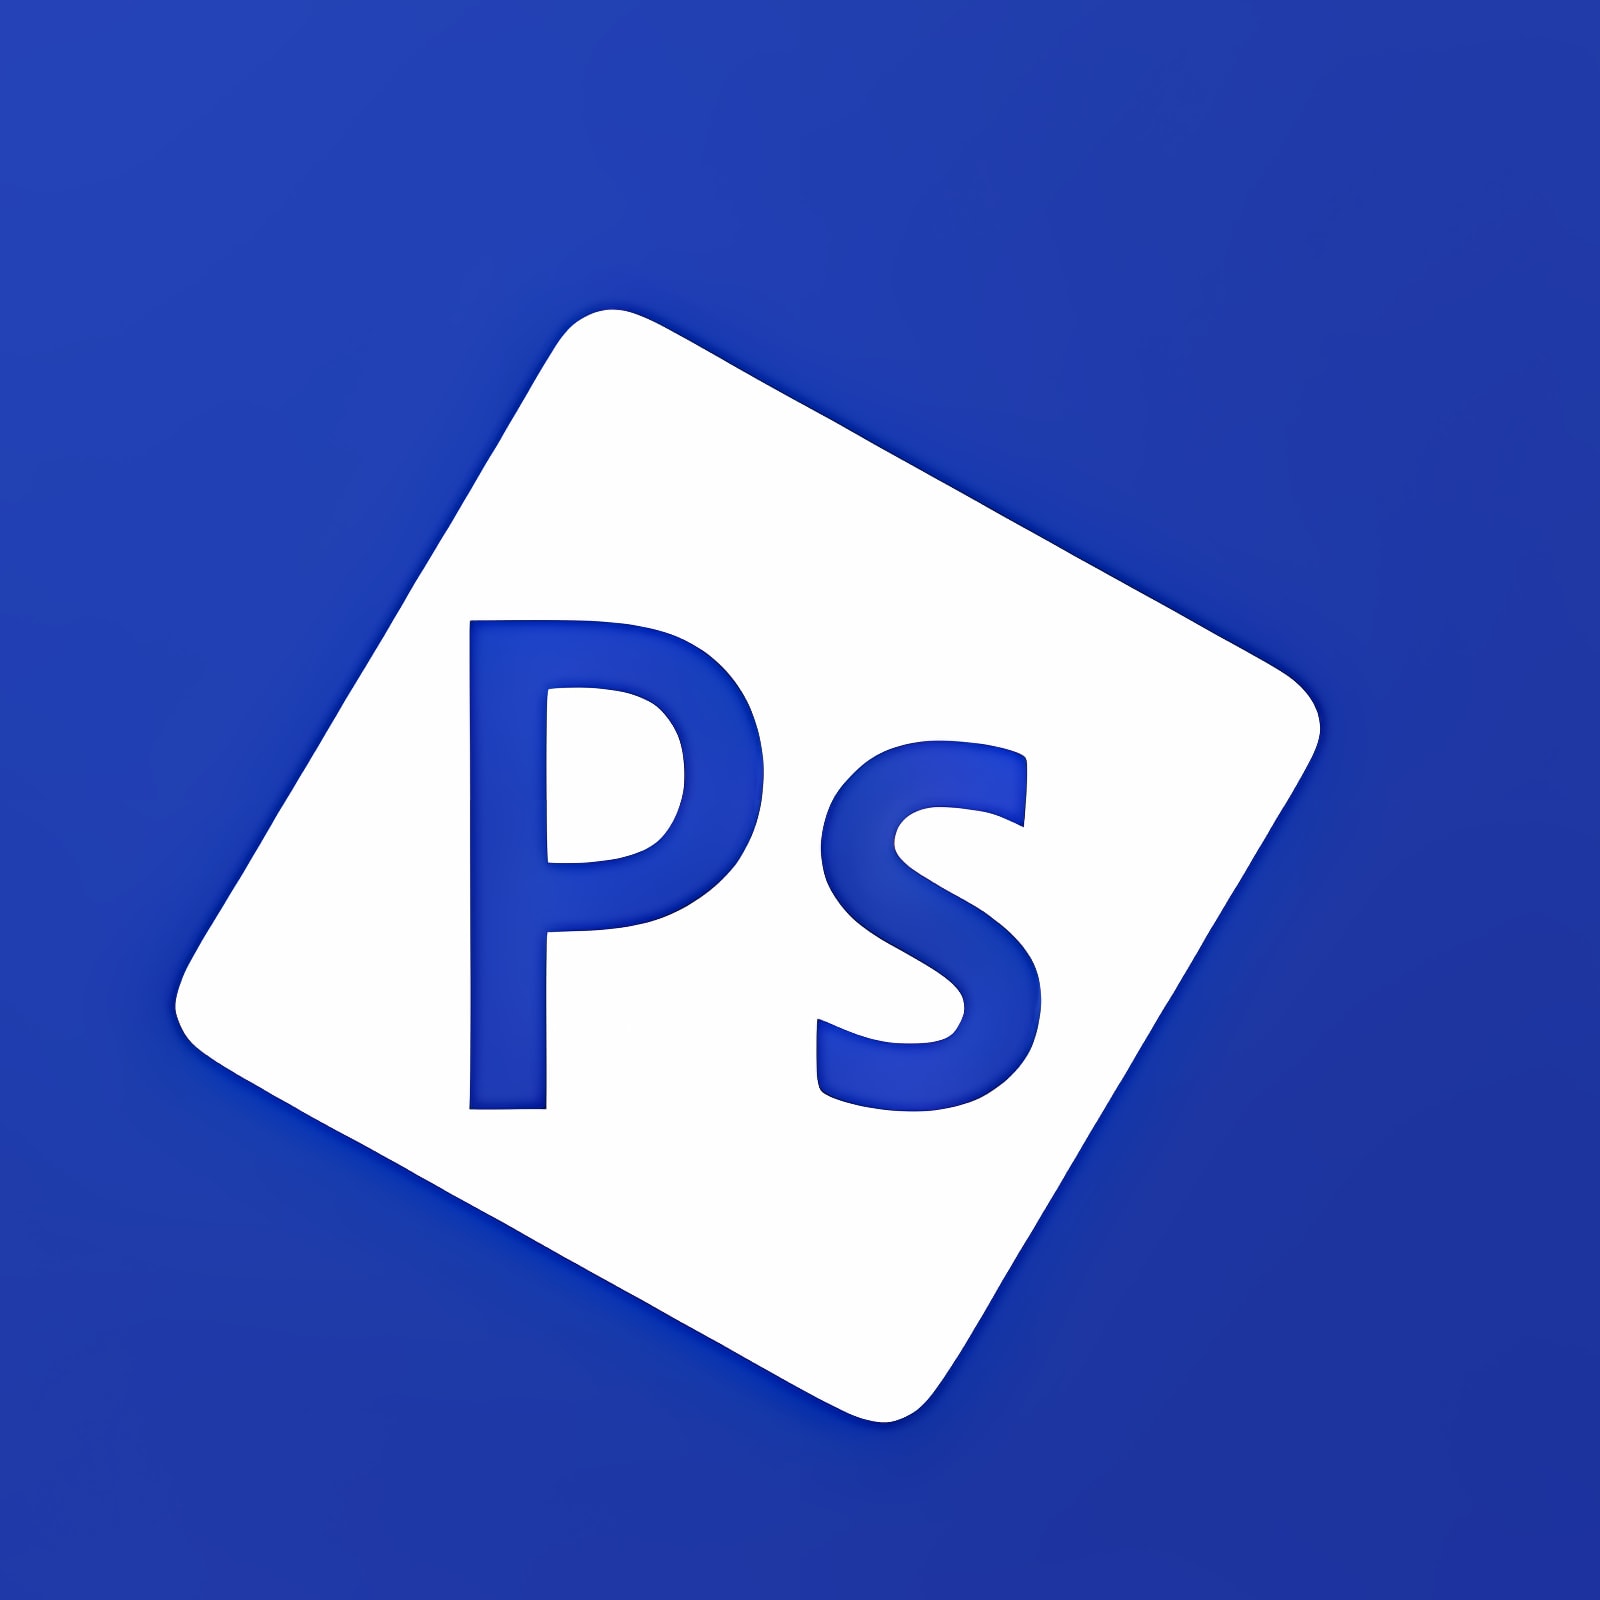 下载 Adobe Photoshop Express 安装 最新 App 下载程序